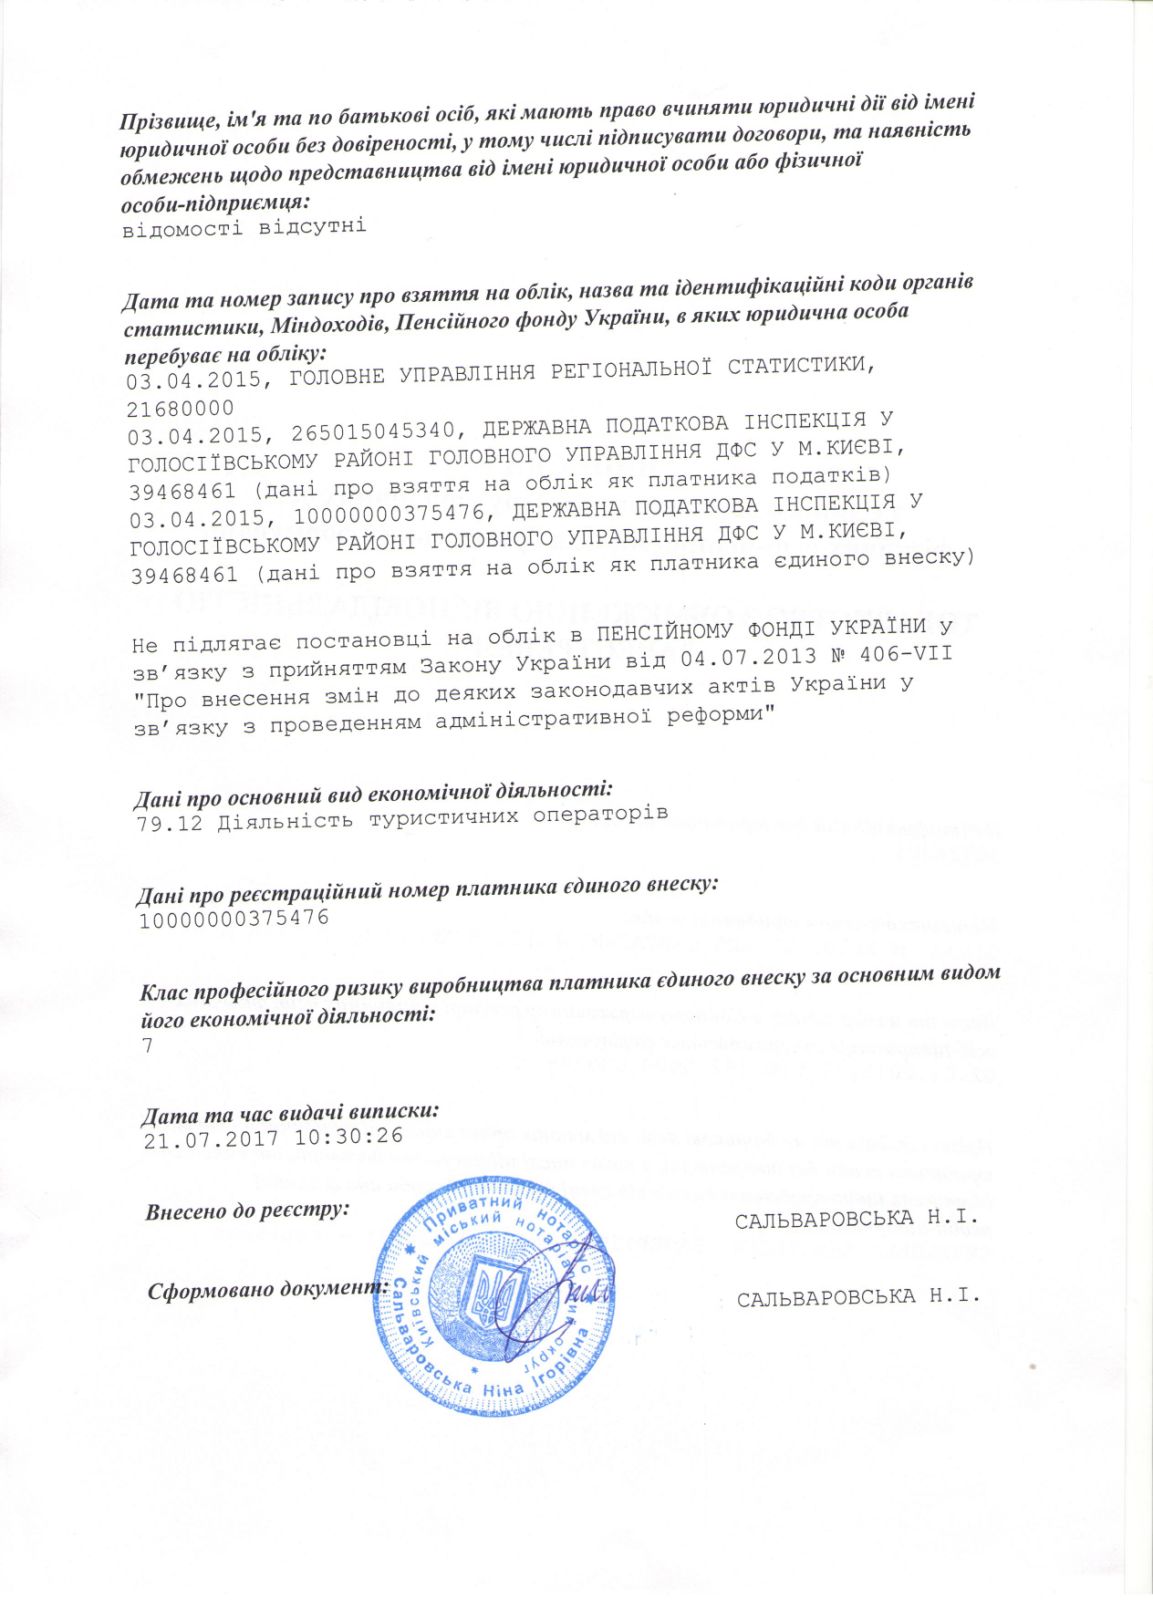 Виписка з єдиного державного реєстру юр. осіб